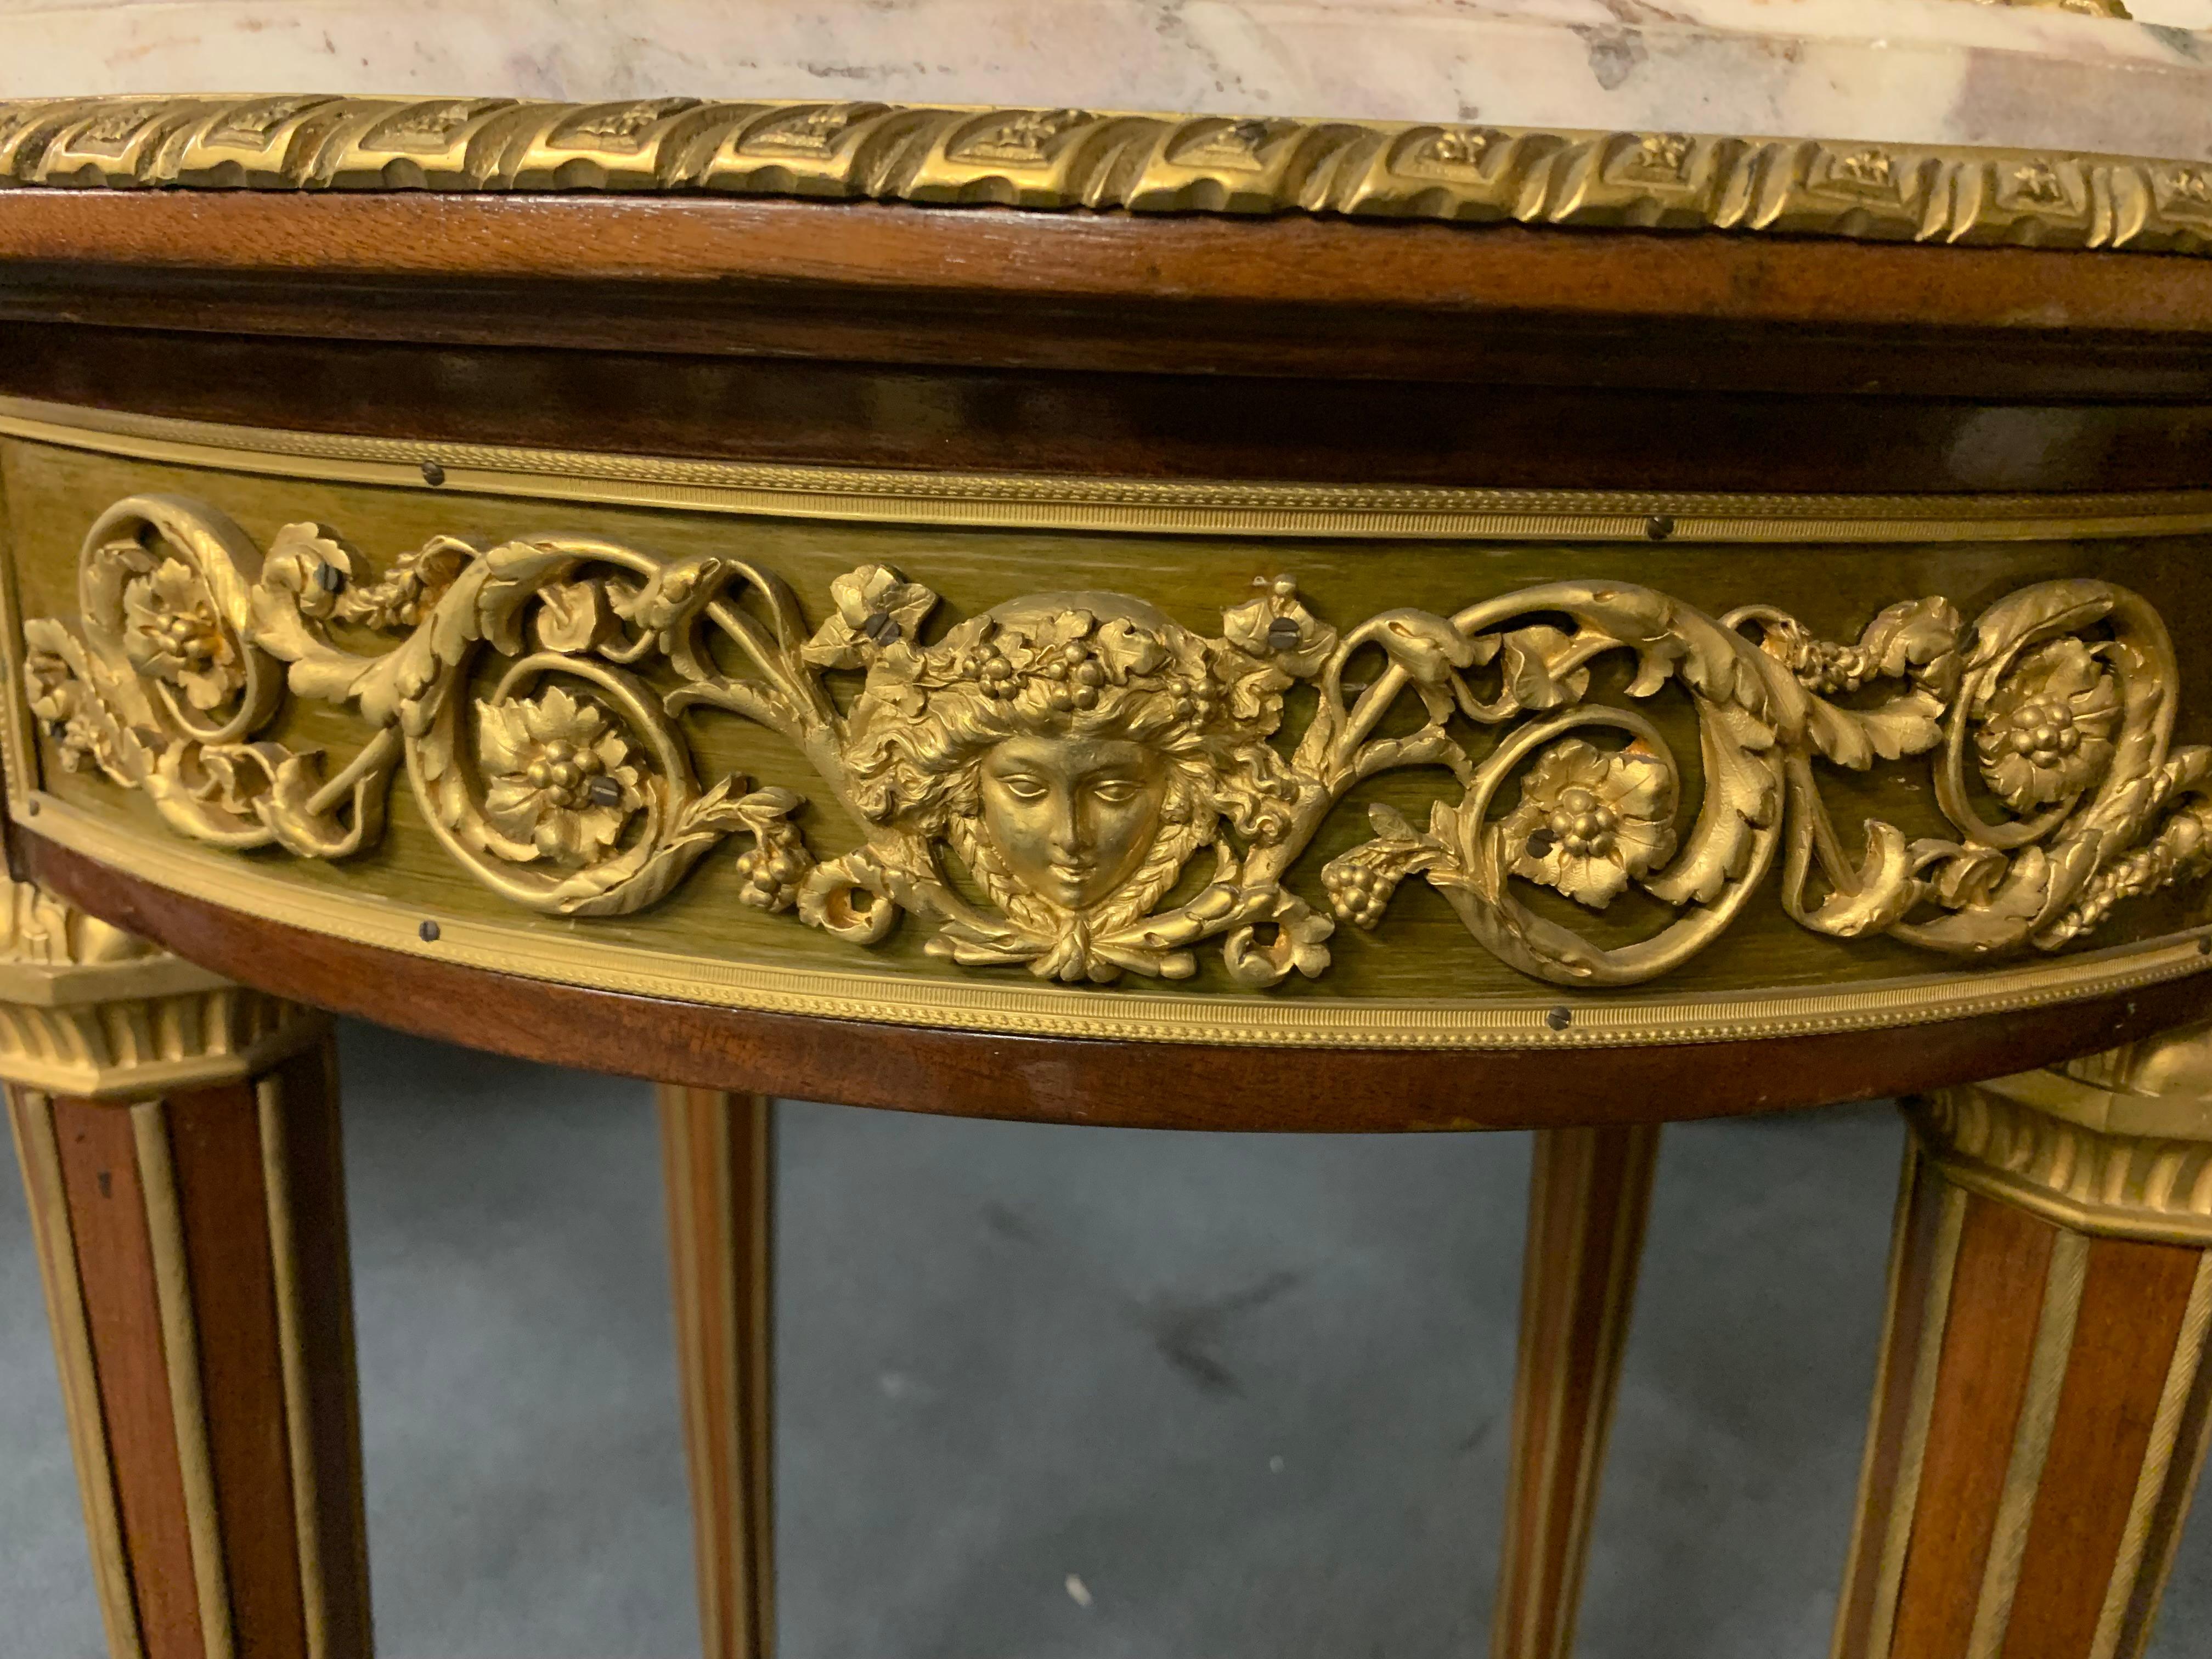 Unsual Mahagoni und Bronze Beistelltisch Louis XVI-Stil von hoher Qualität, ist der Gürtel mit fein gemeißelten Bronze verziert. die Beine sind mit Bronze, die absteigen getrimmt und sind mit herrlichen vertieften vergoldeten Bronze sabot beendet.